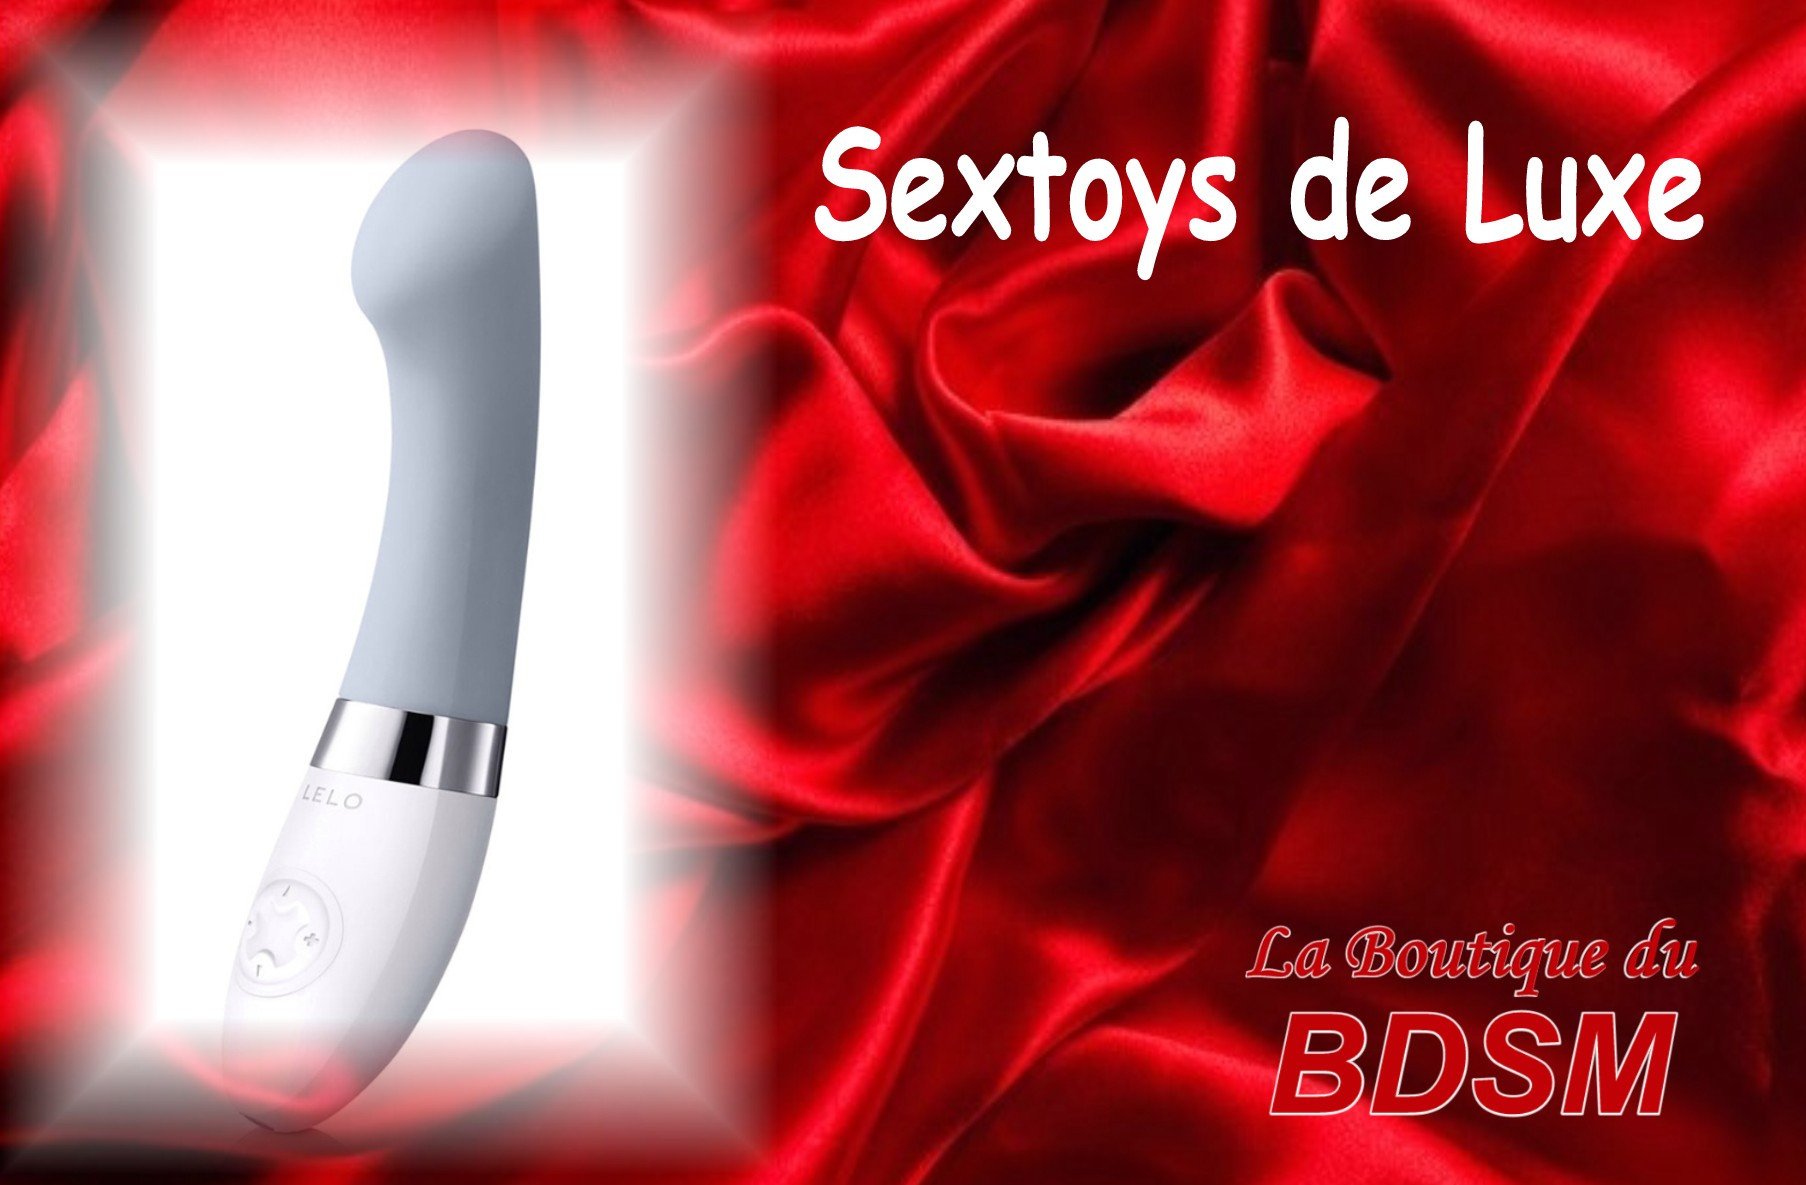 SEX-TOYS DE LUXE